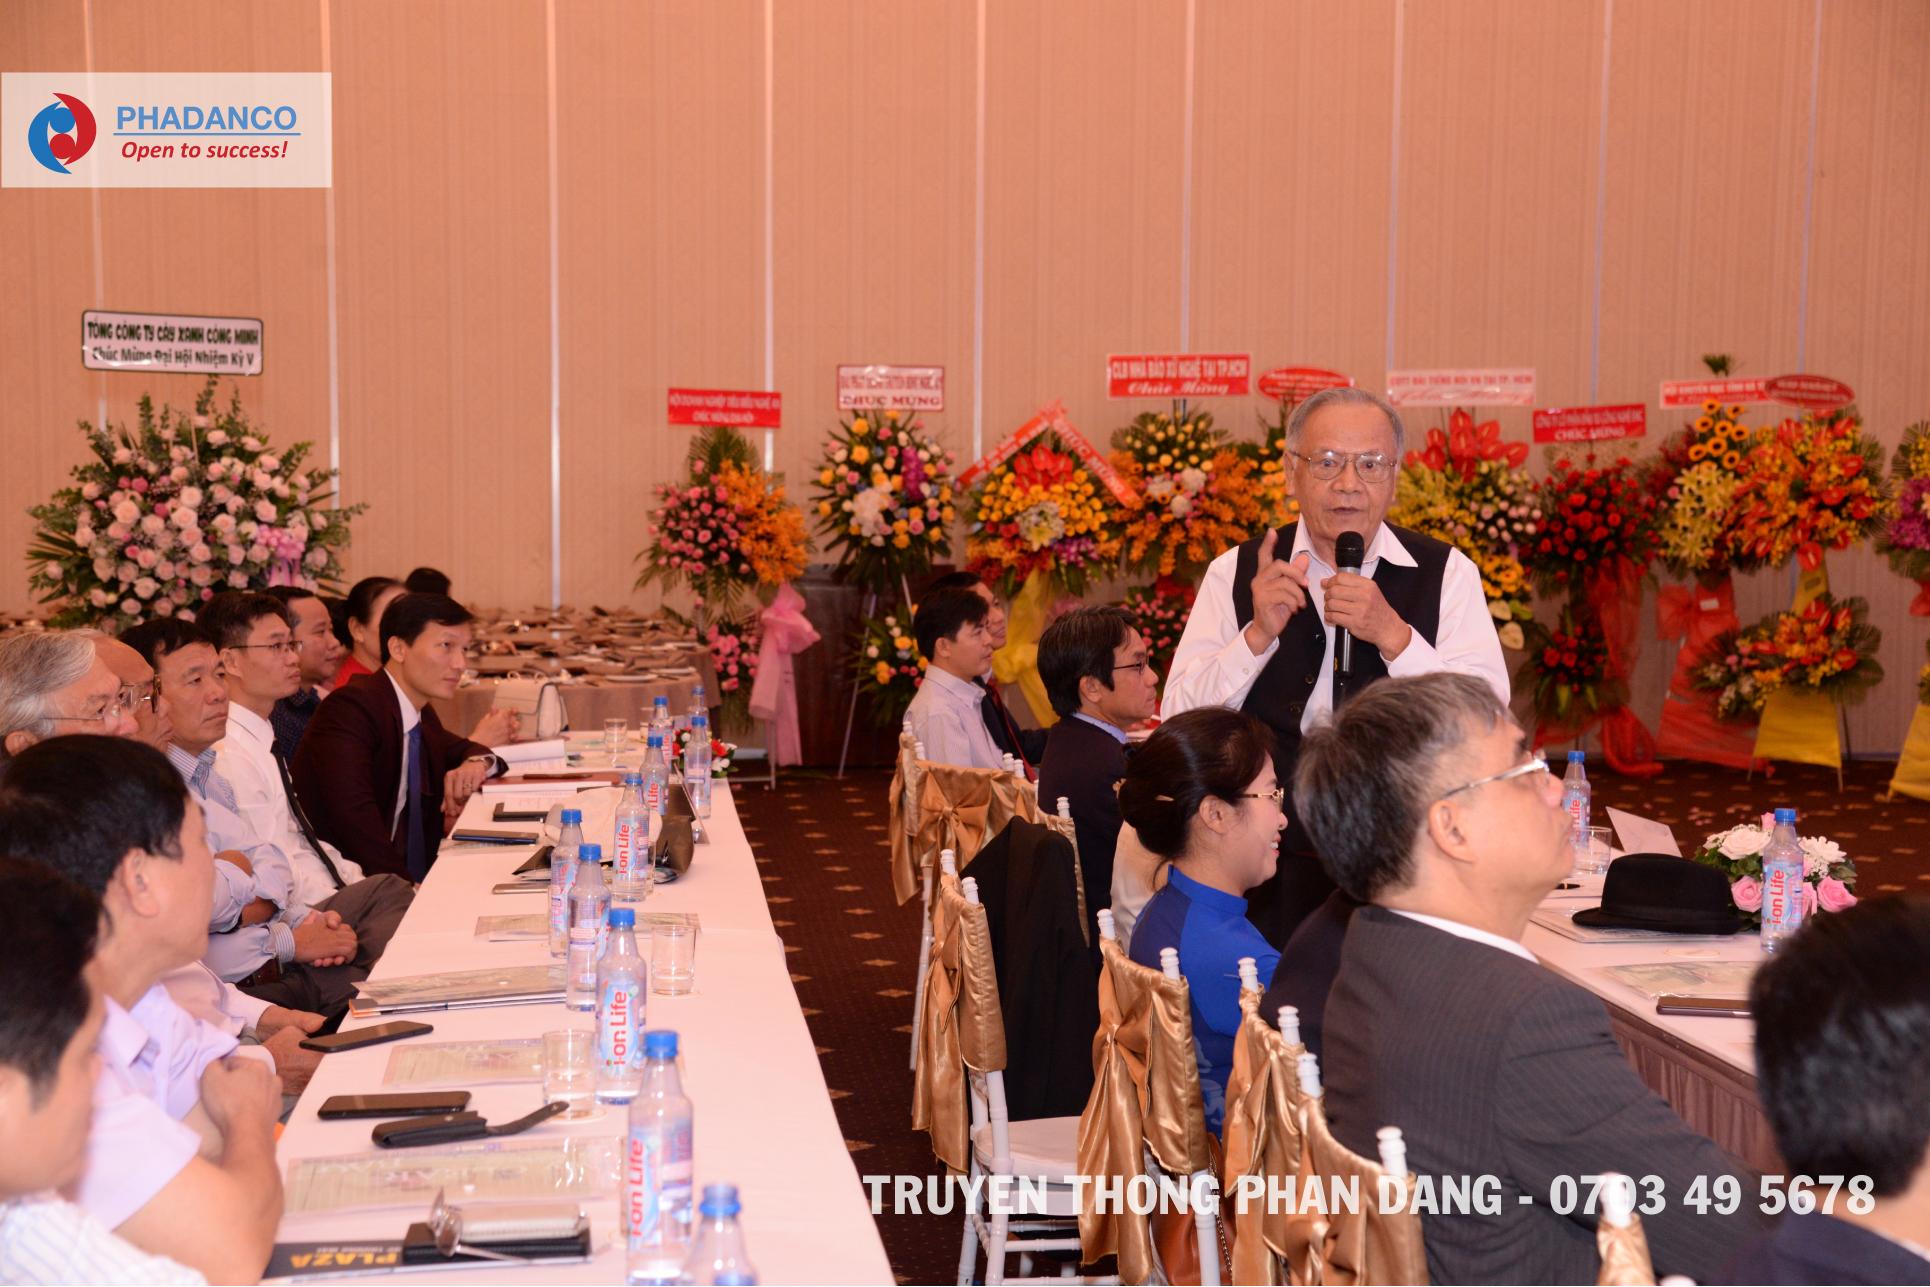 Công ty tổ chức sự kiện truyền thông Phan Đăng tổ chức lễ kỉ niệm 15 năm thành lập cho hội DN Nghệ Tĩnh tại TP.HCM